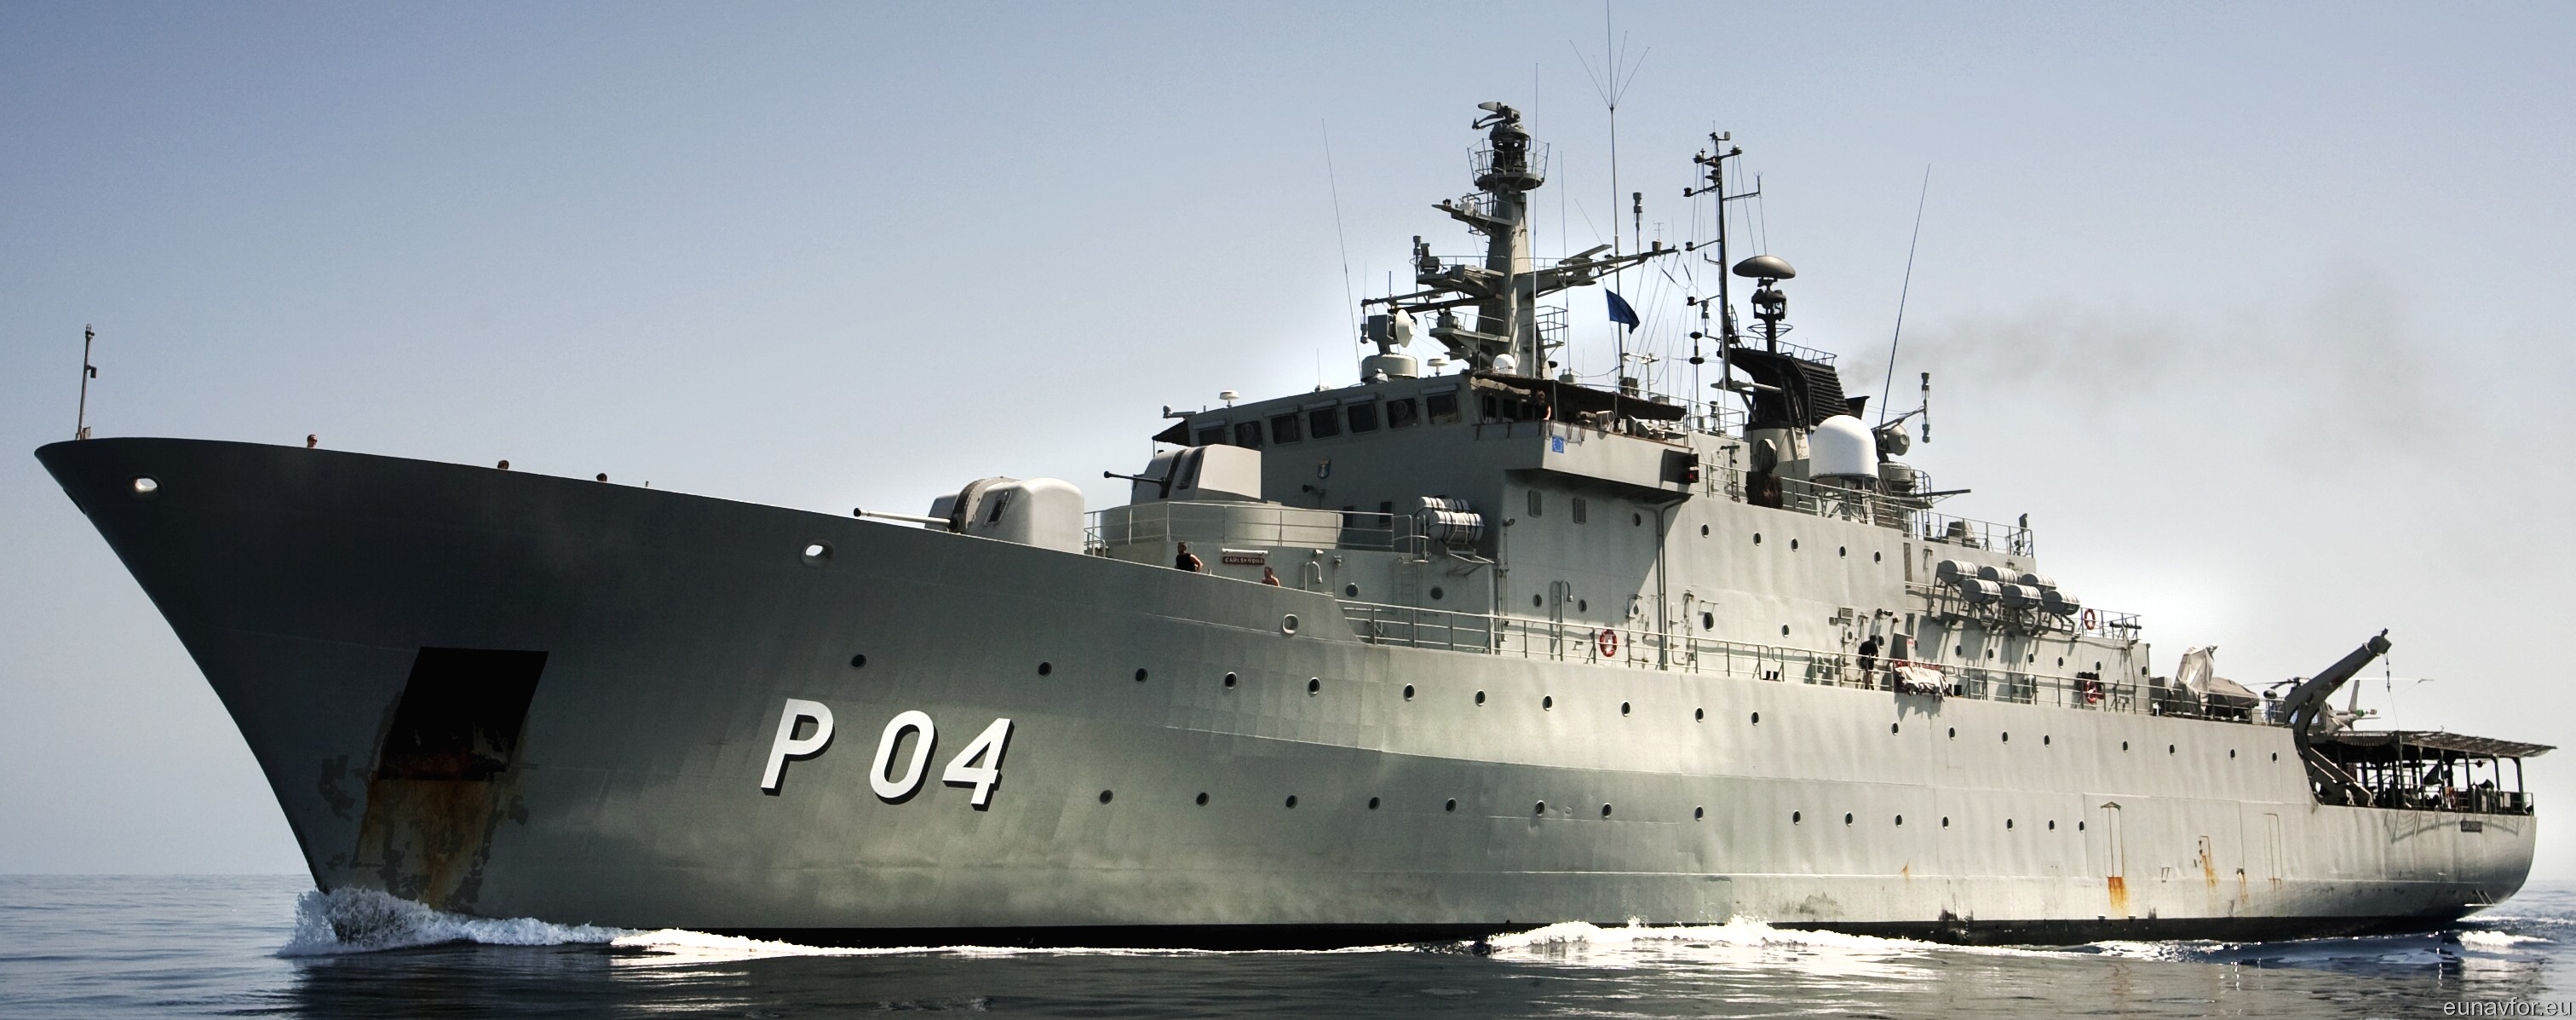 p04 hswms carlskrona hms ocean patrol vessel opv swedish navy svenska marinen försvarsmakten 14